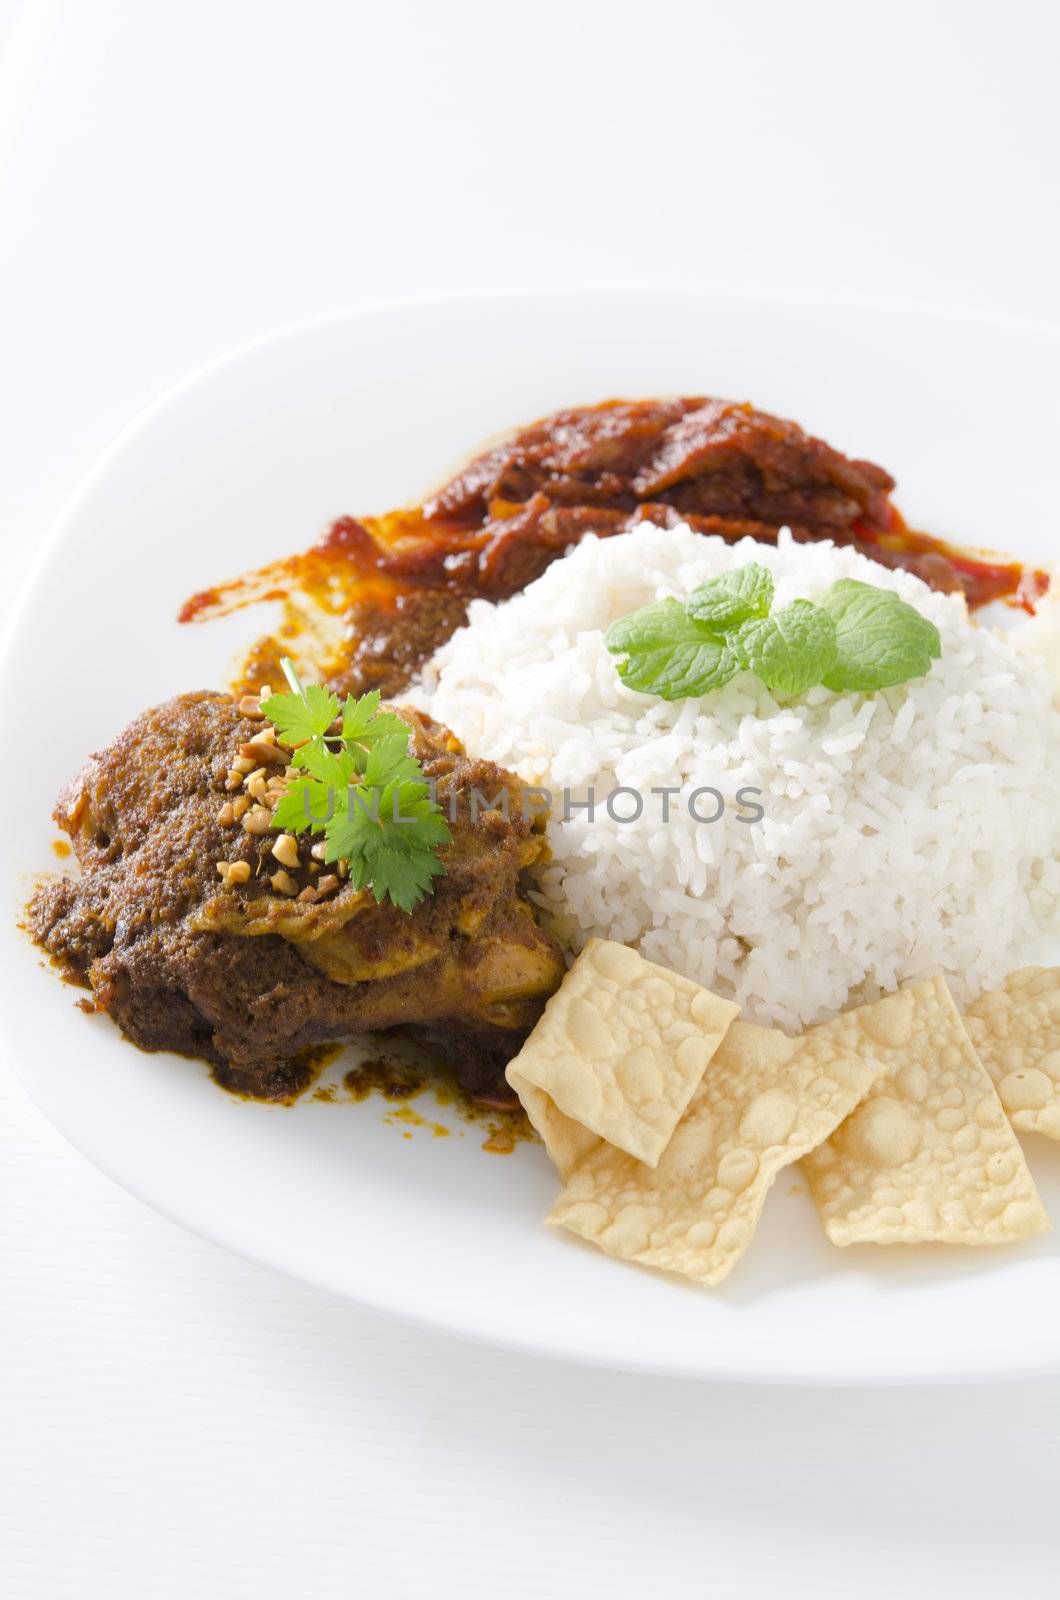 Nasi lemak traditional malaysian spicy rice dish by yuliang11